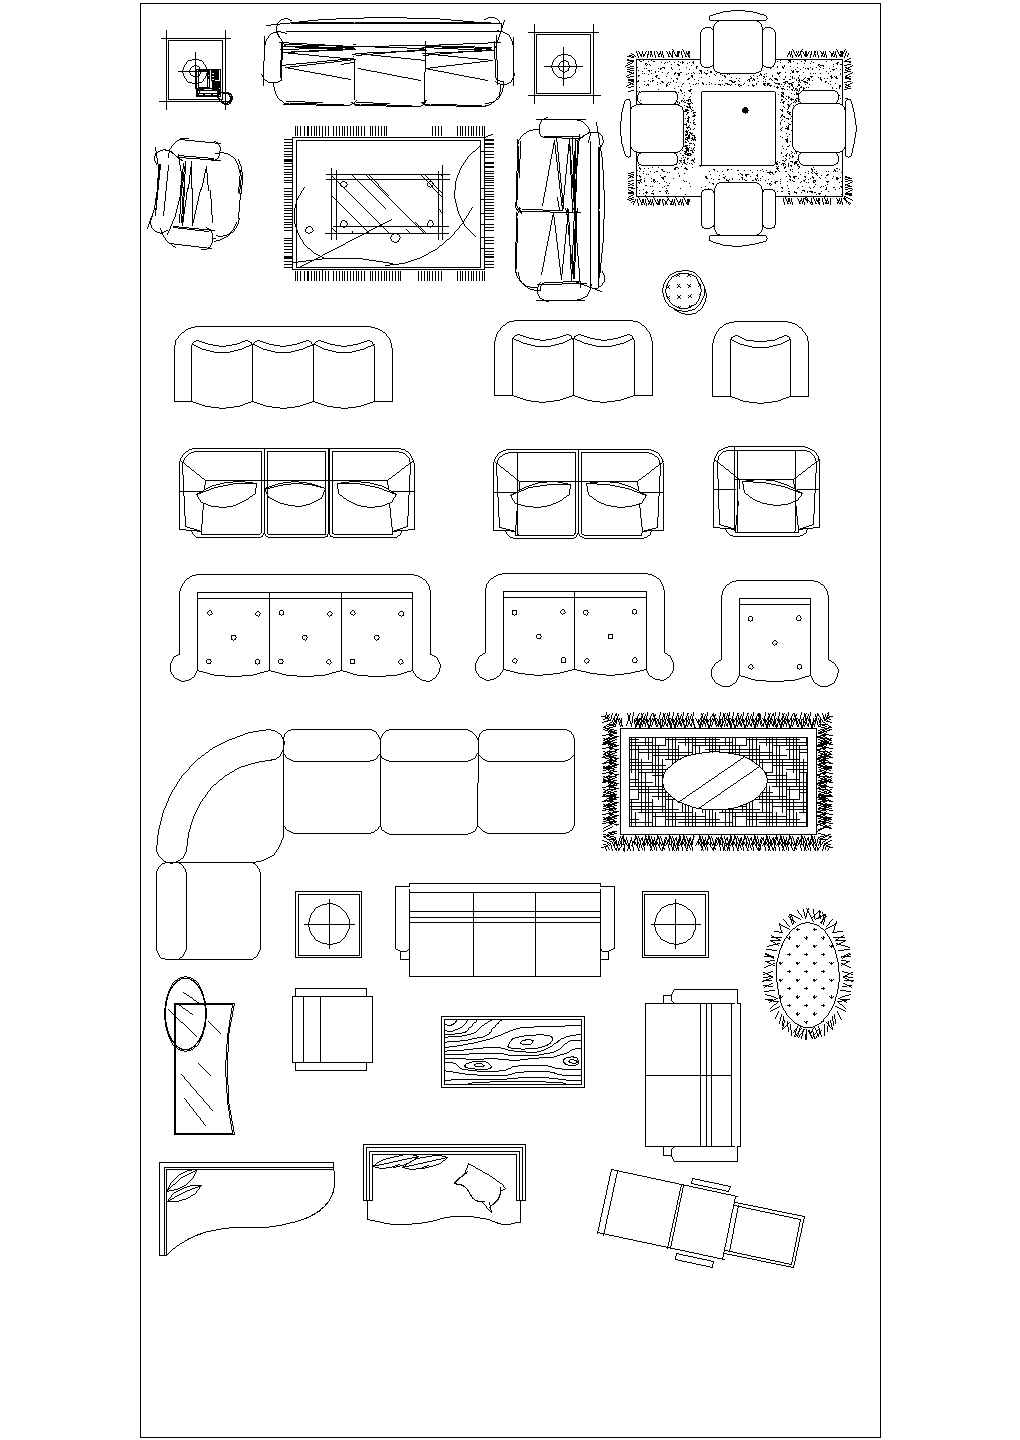 【苏州】某景区公寓内全套设施设计cad图纸